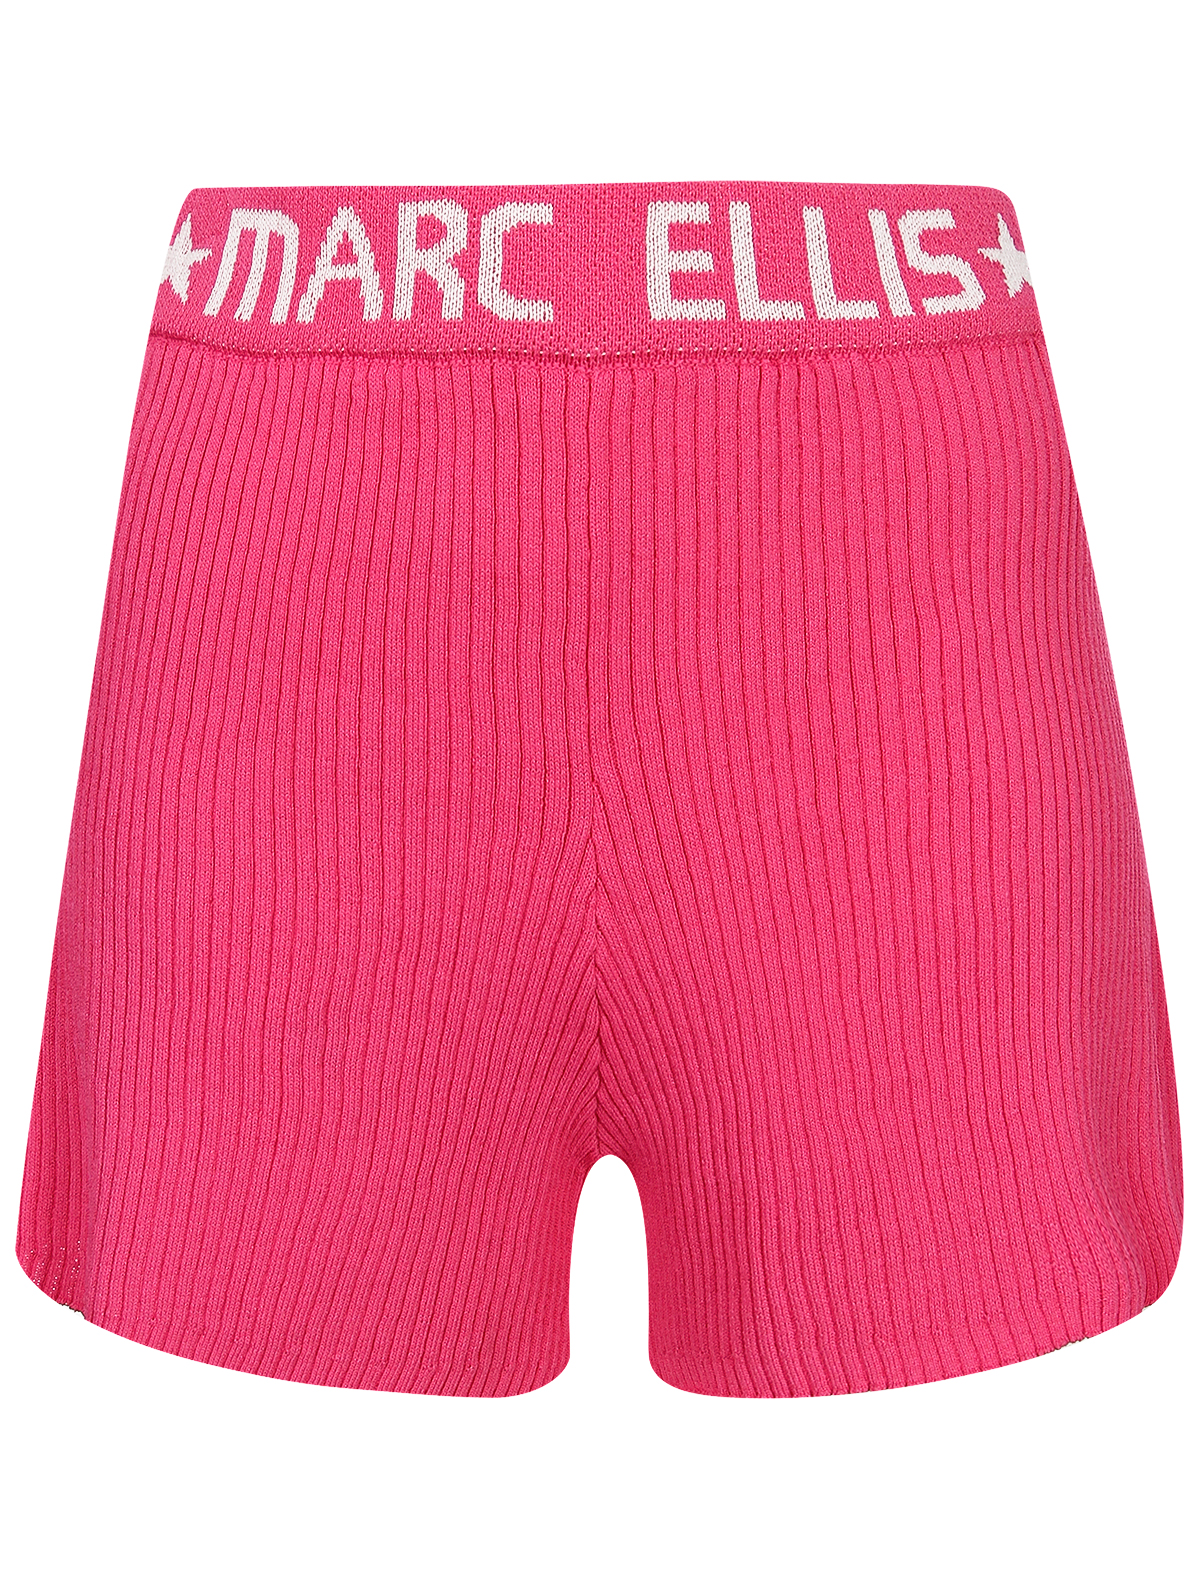 шорты marc ellis для девочки, розовые